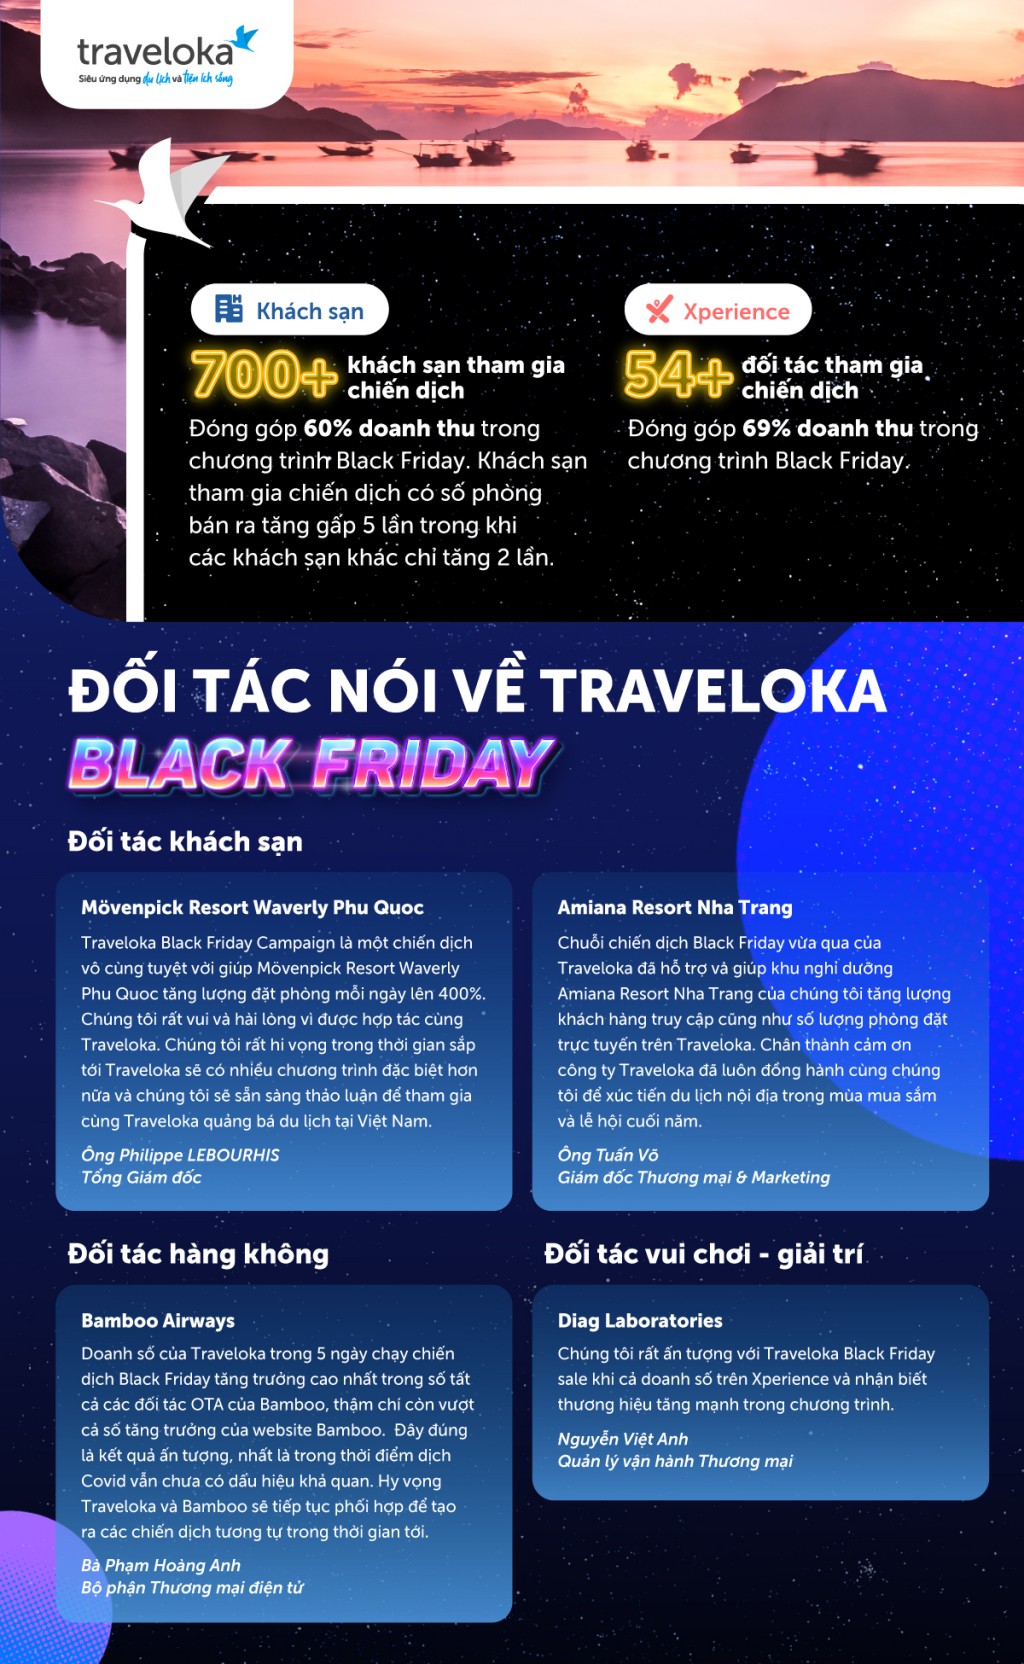 Đối tác nói về chiến dịch Traveloka Black Friday